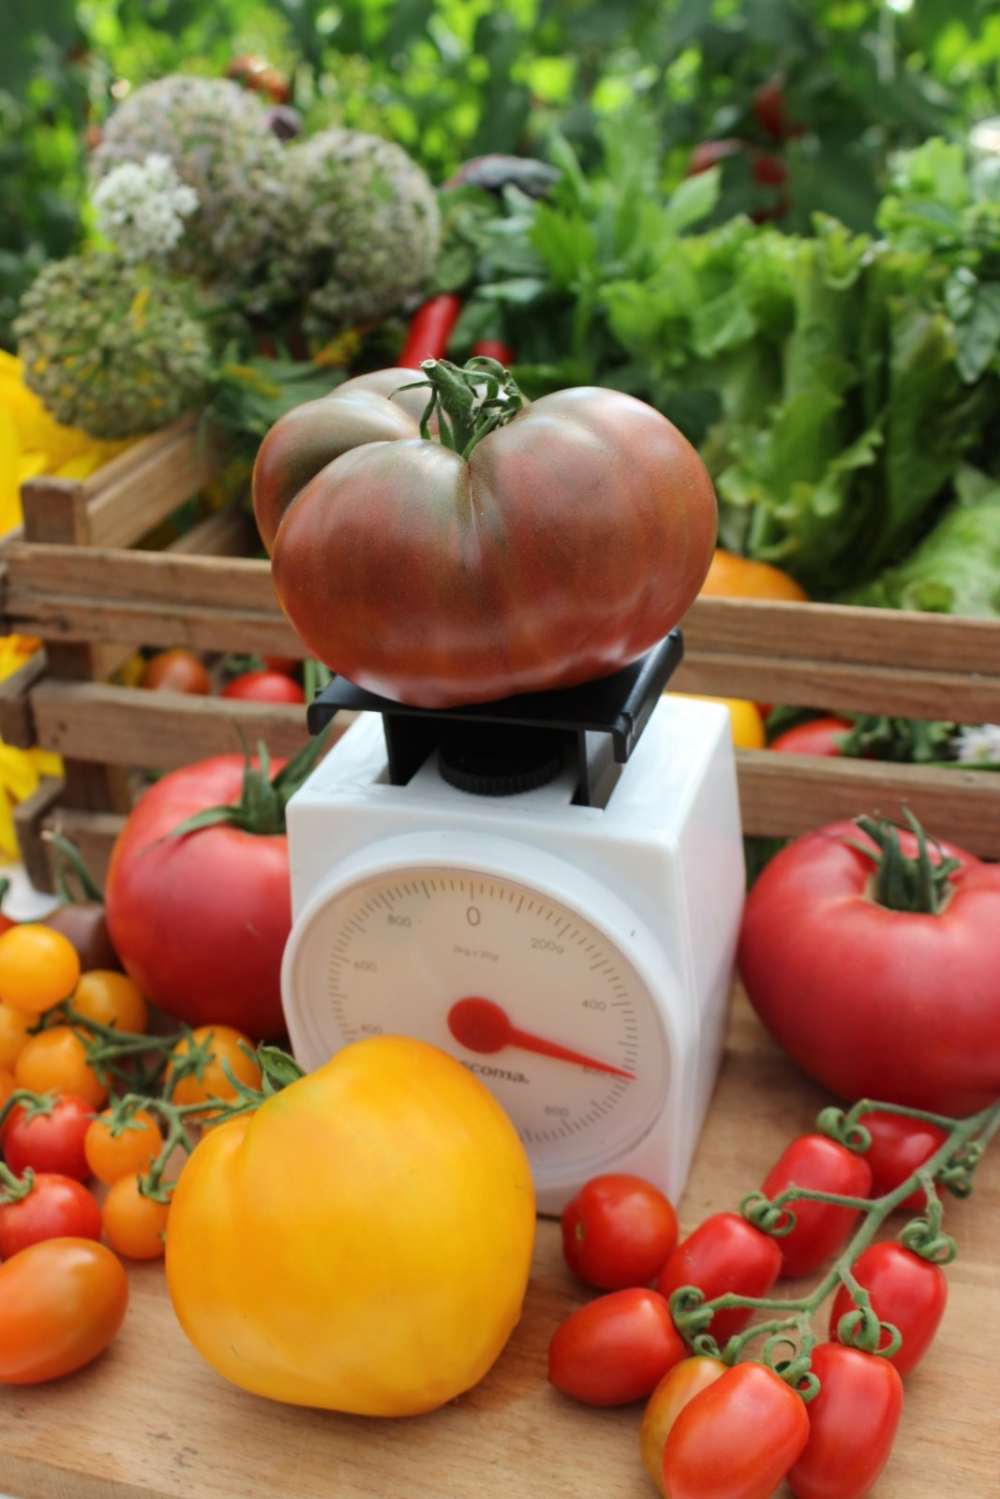 Сахар красный — сладкий томат для теплицы и сада. описание и отзывы о сорте